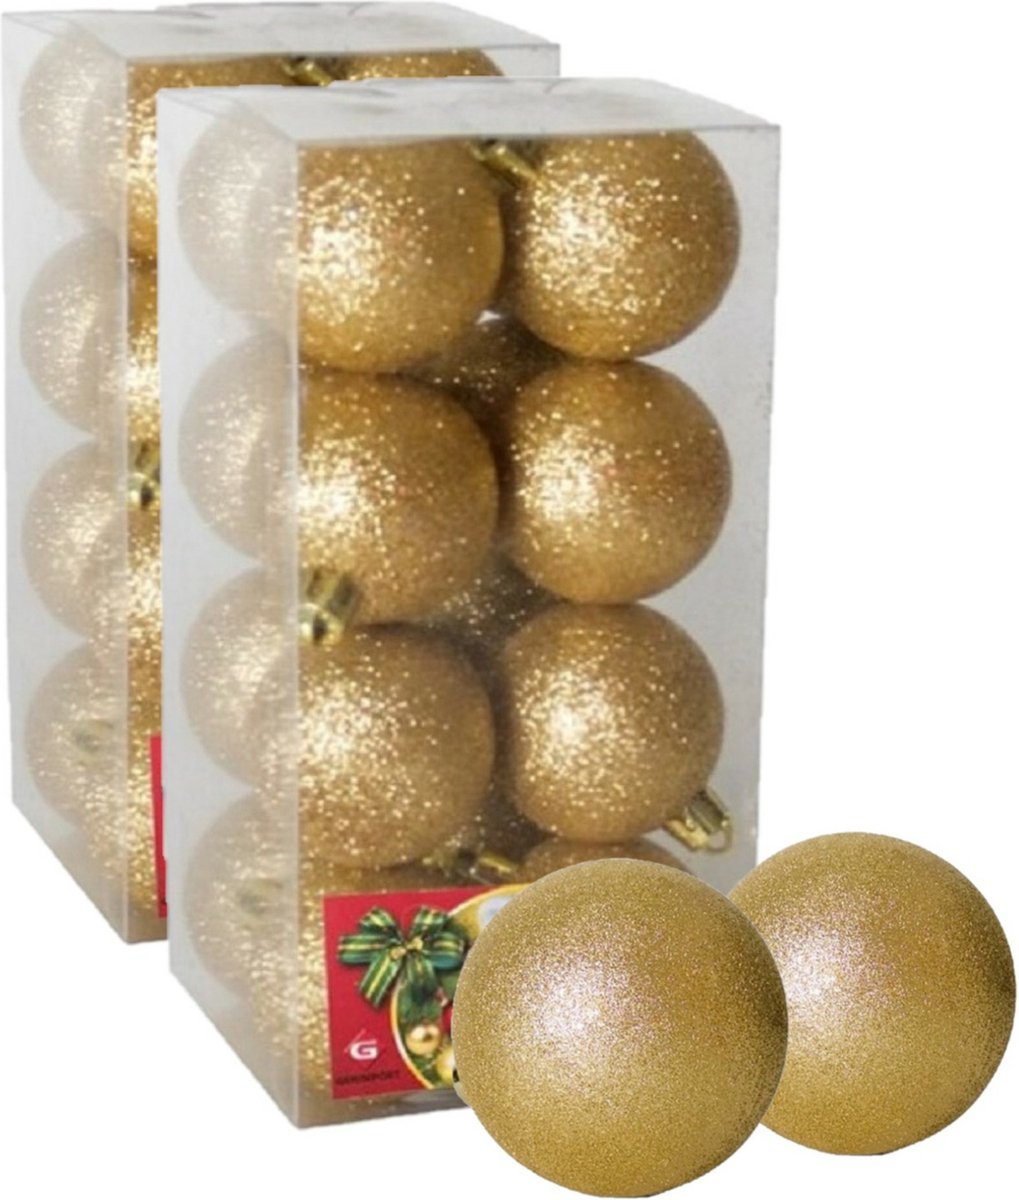 32x stuks kerstballen goud glitters kunststof diameter 5 cm - Kerstboom versiering